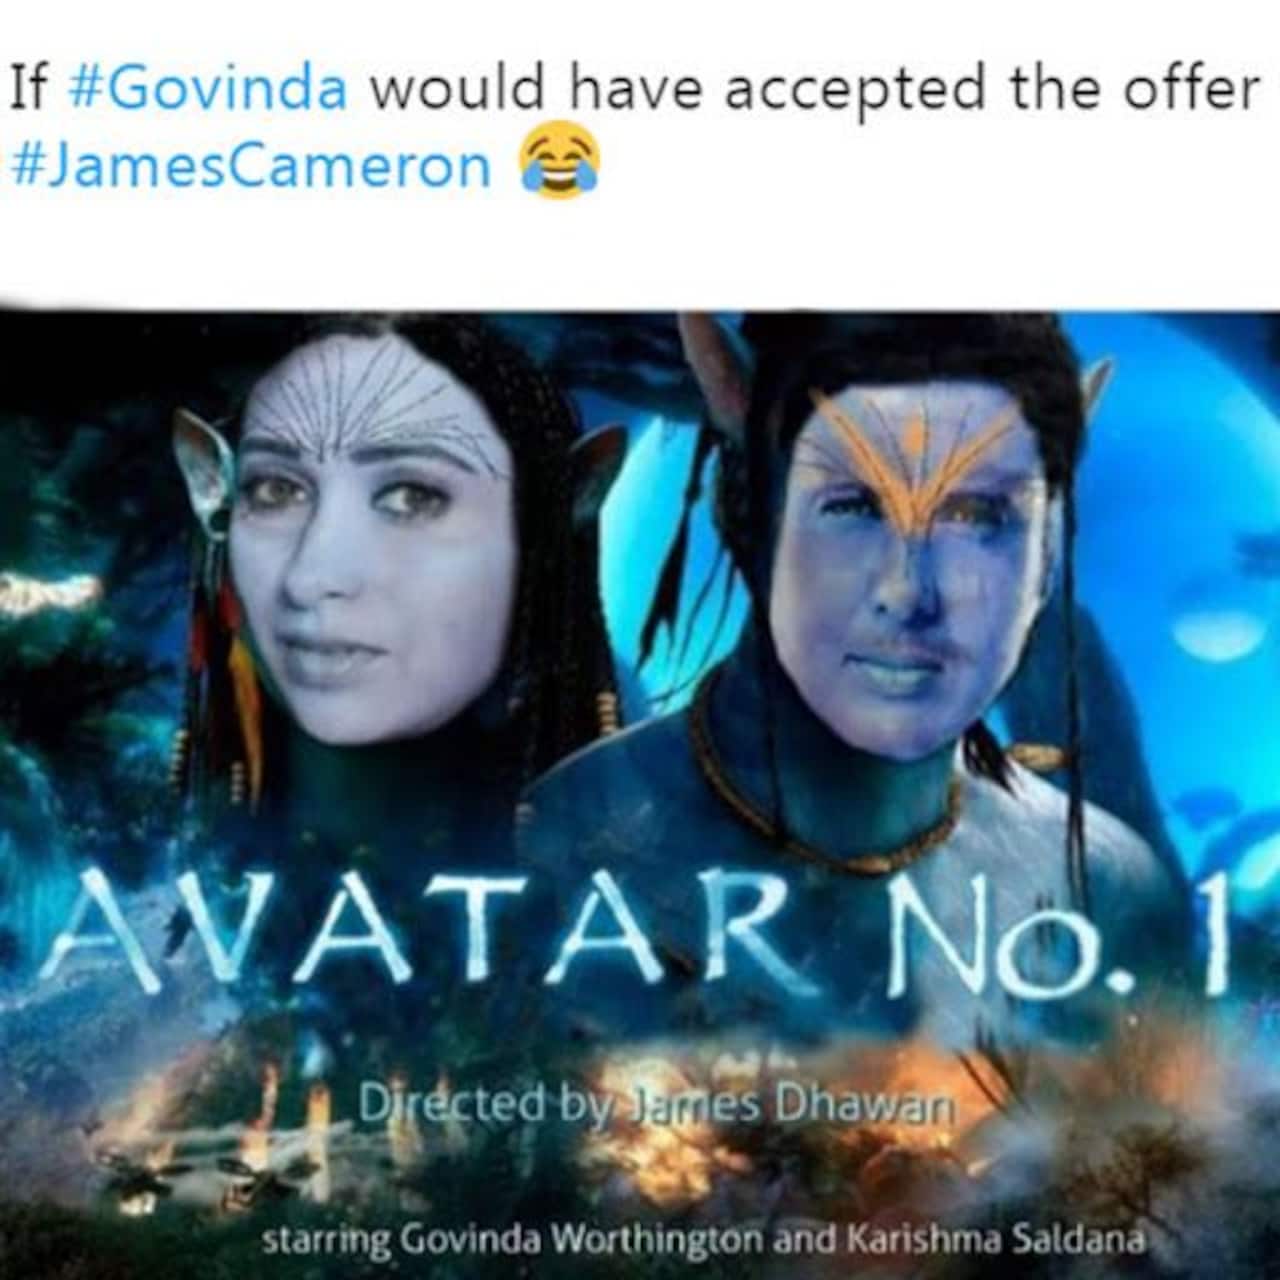 Xem ngay những bức ảnh meme hài hước về Govinda và Avatar để trở thành một phần của cộng đồng mạng vui nhộn nhất!